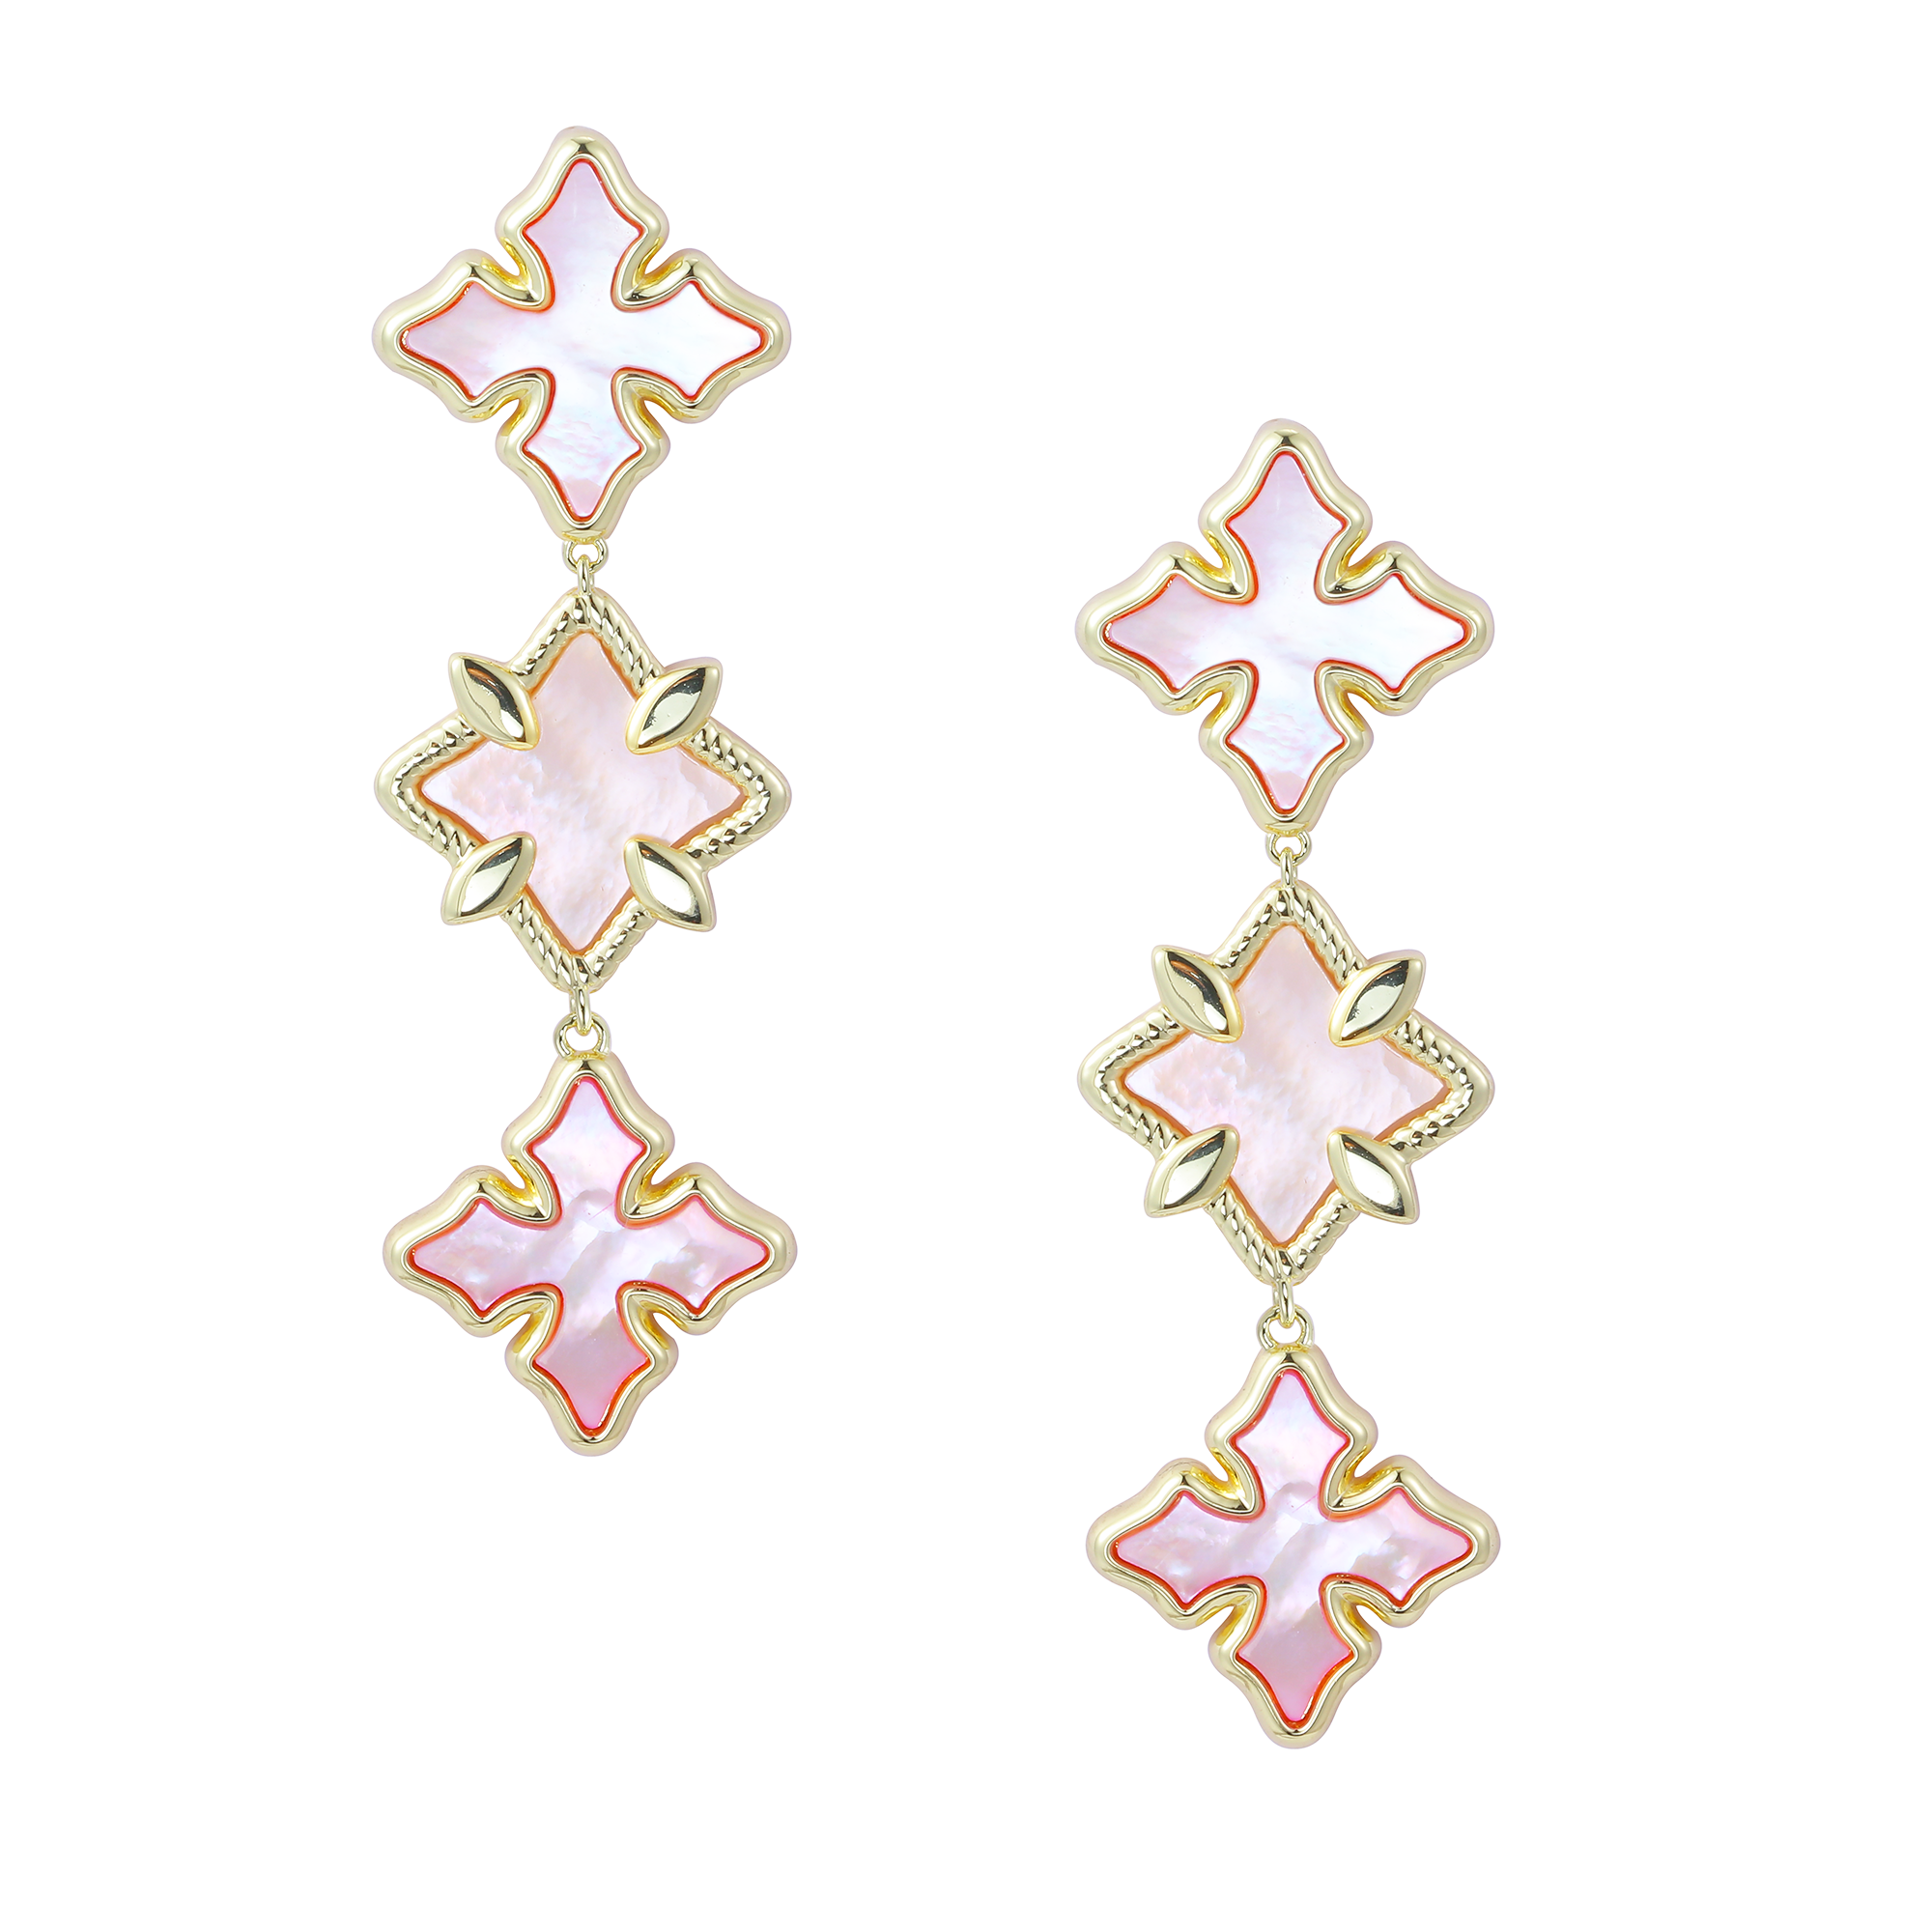 Cross Linear Statement Earrings in Pink Pearl/Gold